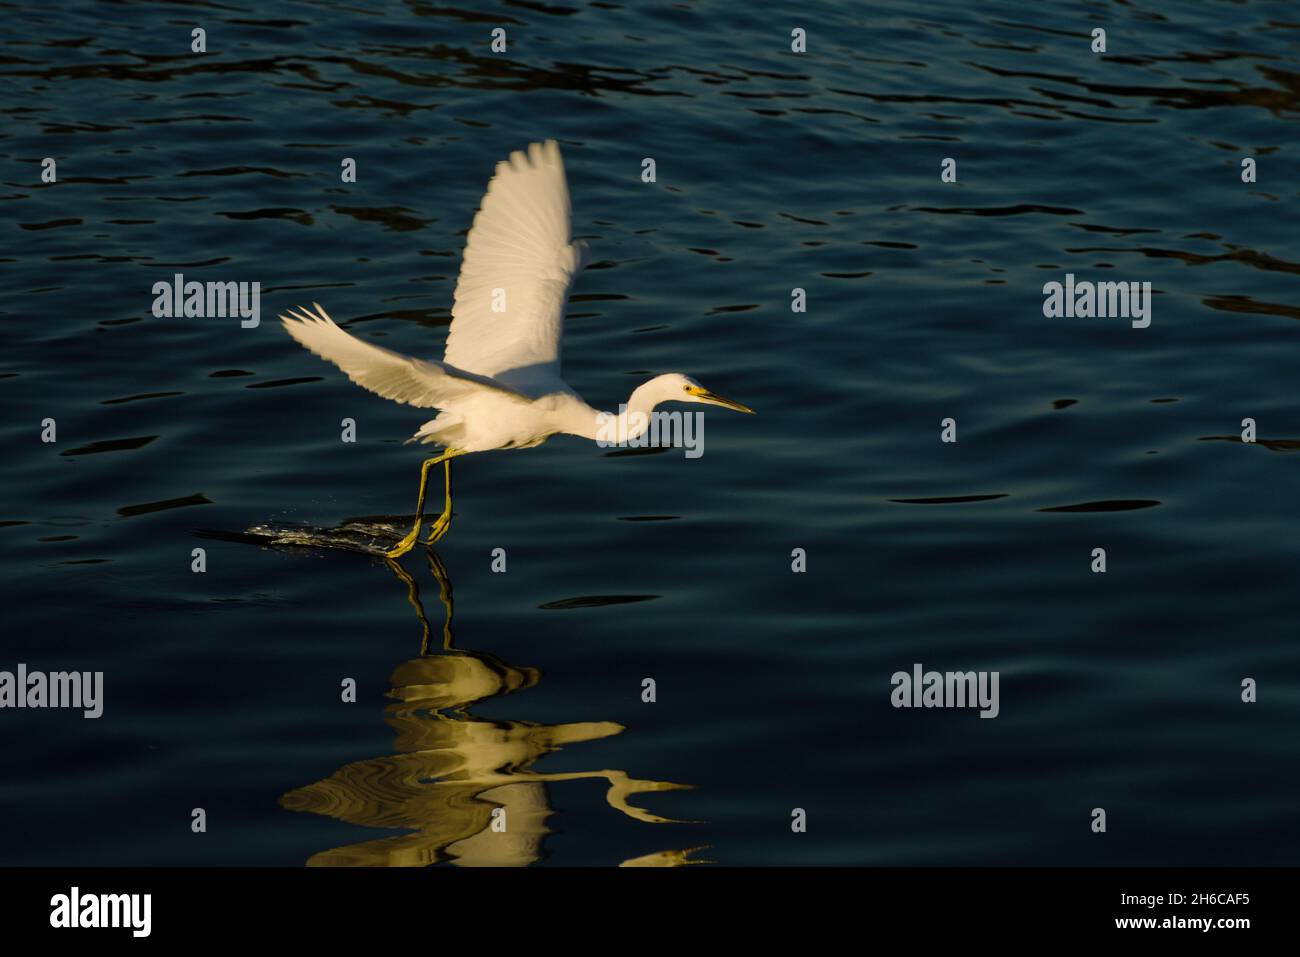 Reiher fliegt anmutig über den See, Füße, die das Wasser mit goldenem Glanz der Sonne absaugen. Feine Detail der Vögel Augen Hals & Flügel, im Wasser reflektiert Stockfoto